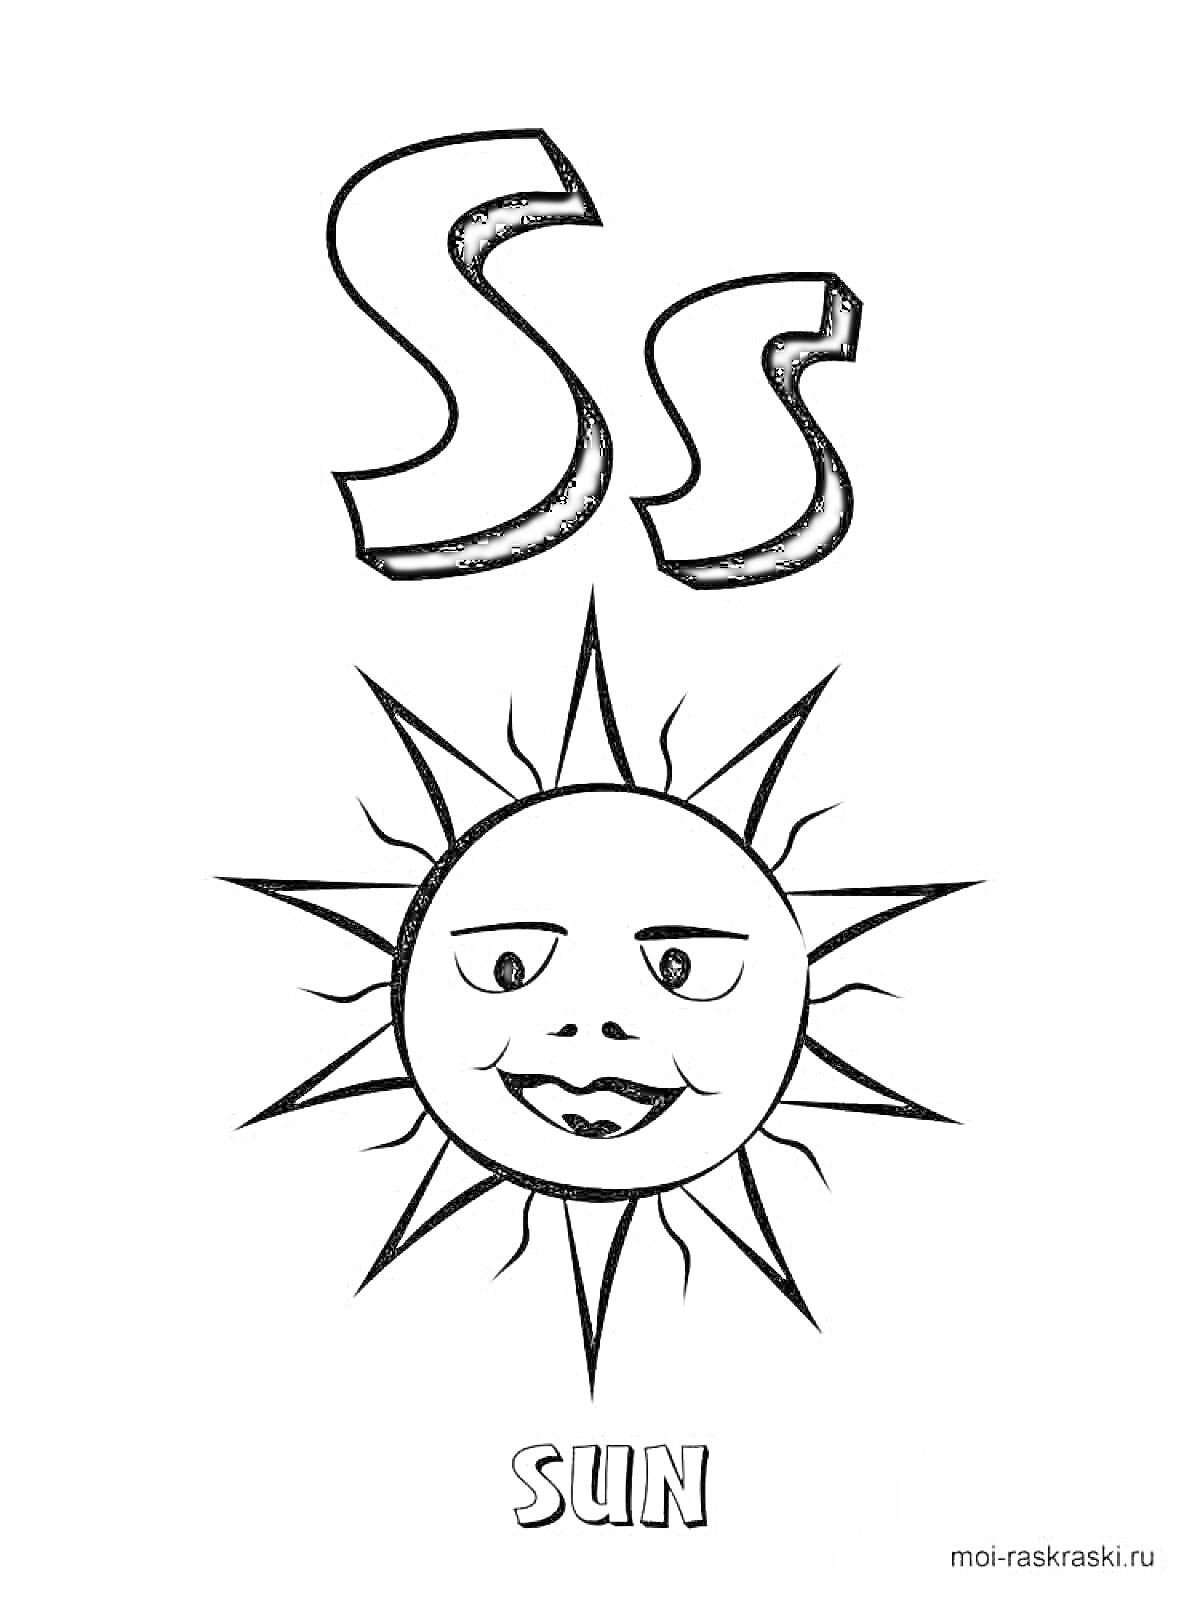 Буква S с изображением солнца и надписью SUN